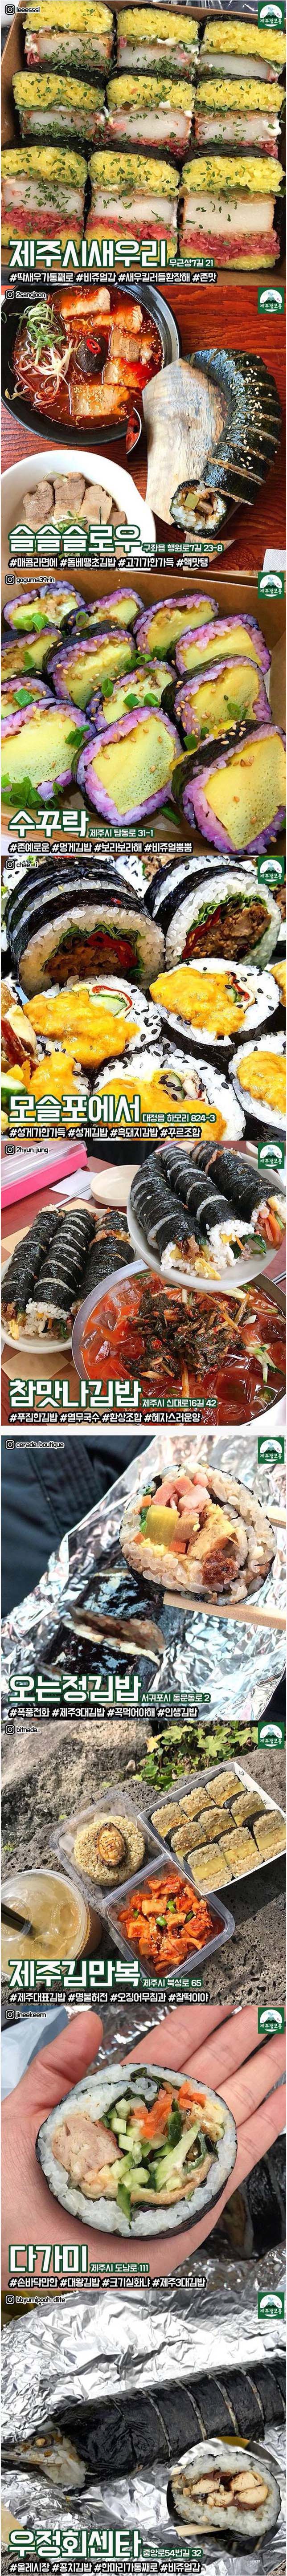 제주도 김밥 맛집 베스트9